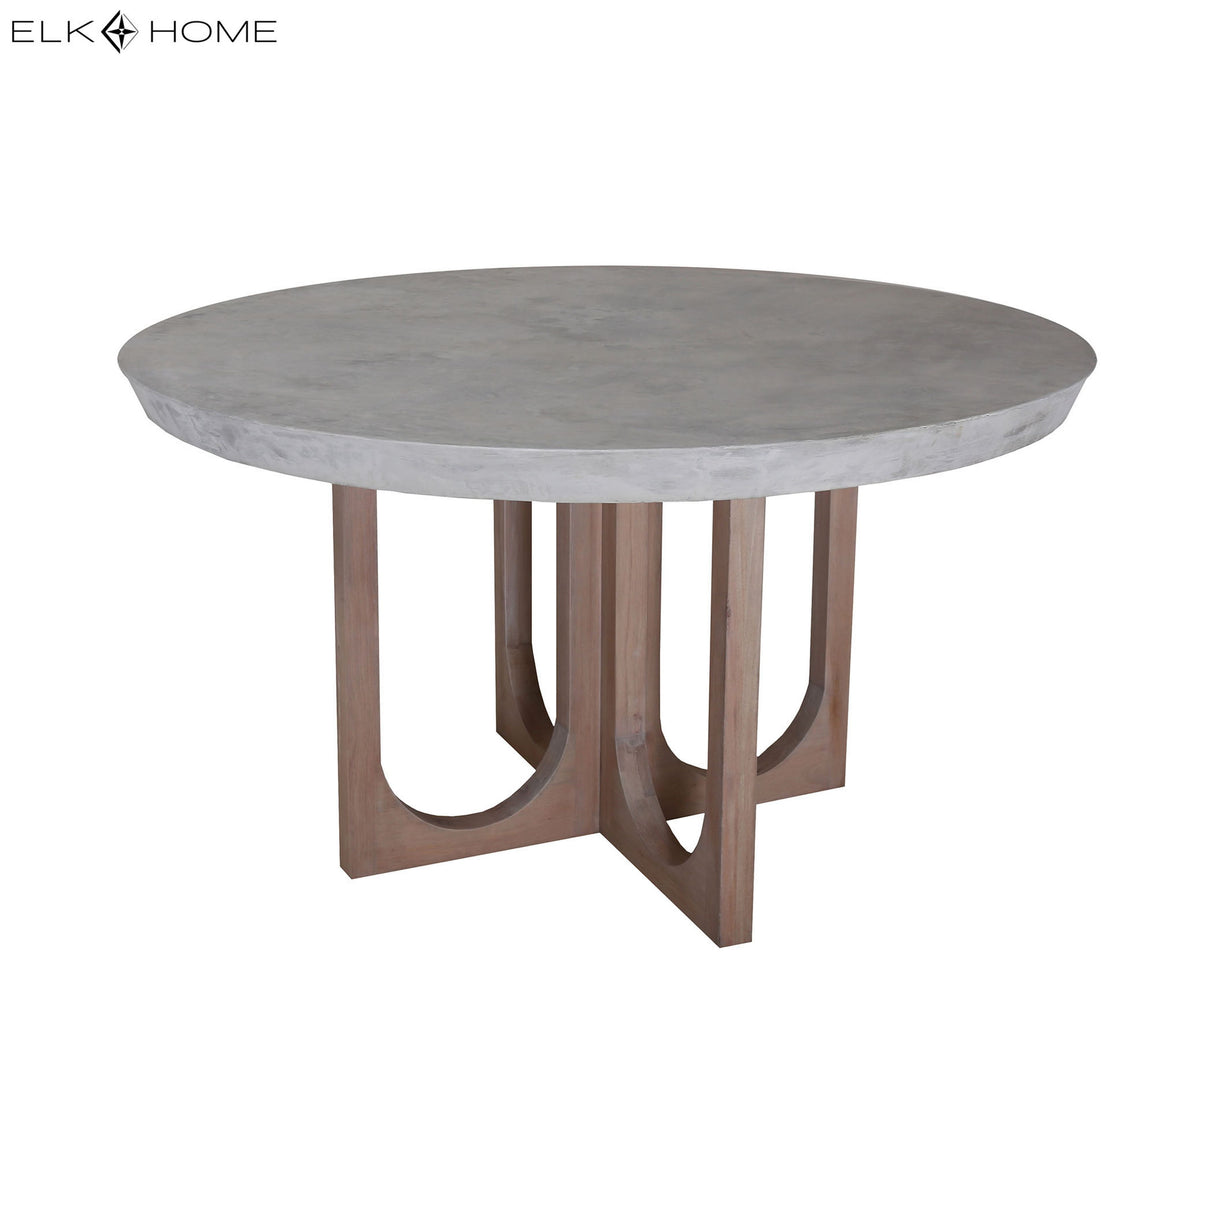 Elk 7011-1497 Innwood Dining Table - Round